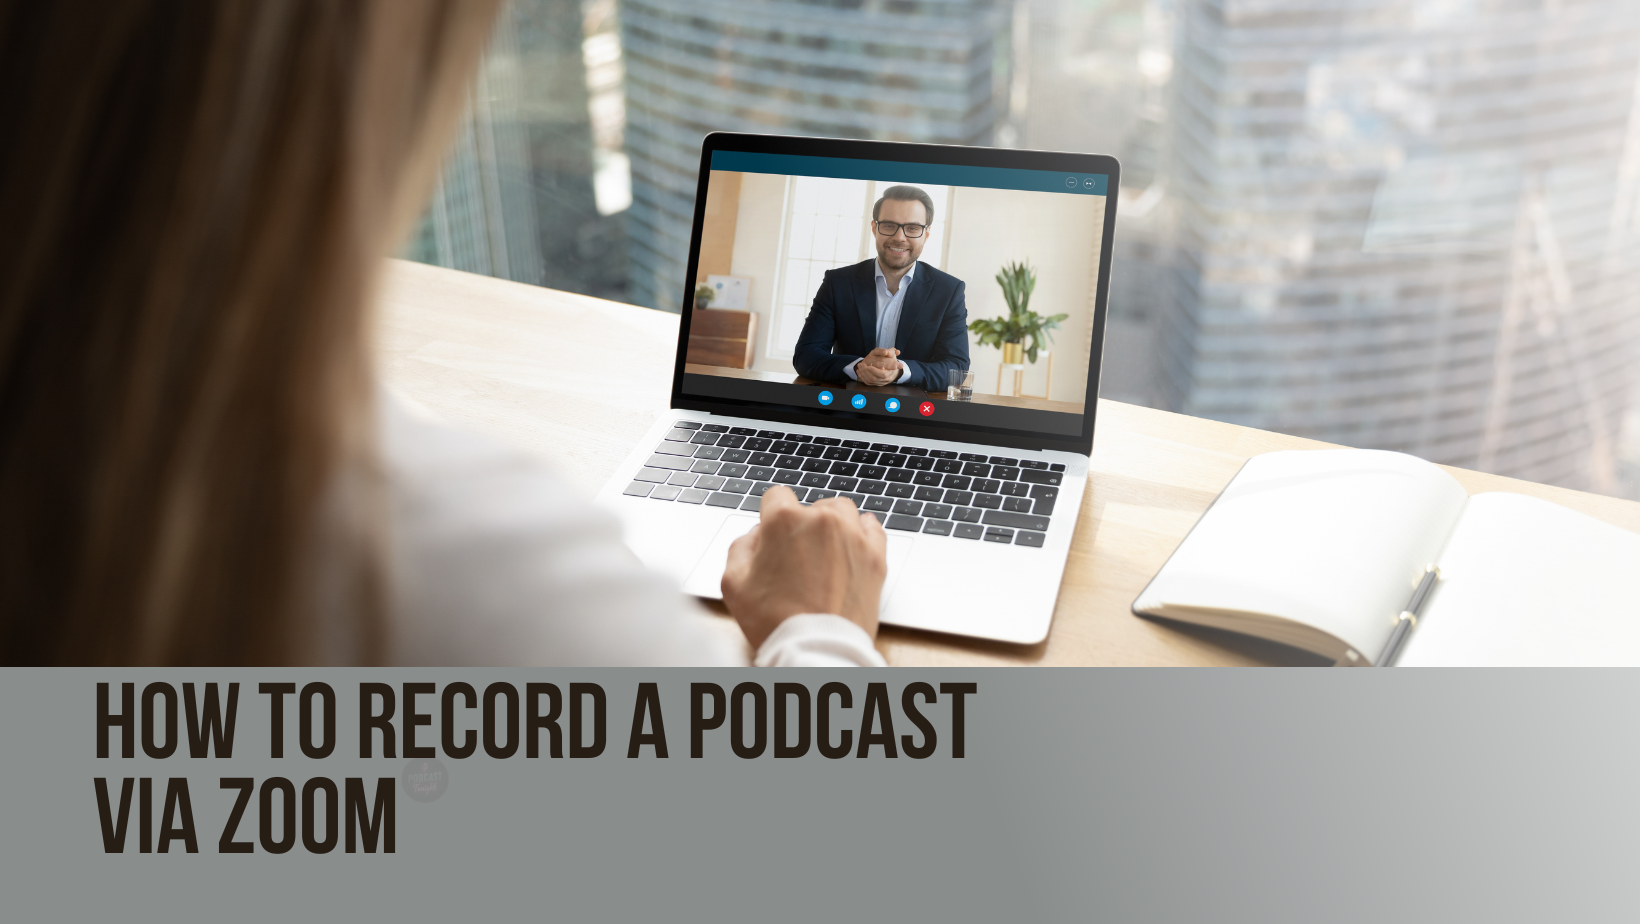 Steps to Record a Podcast via Zoom